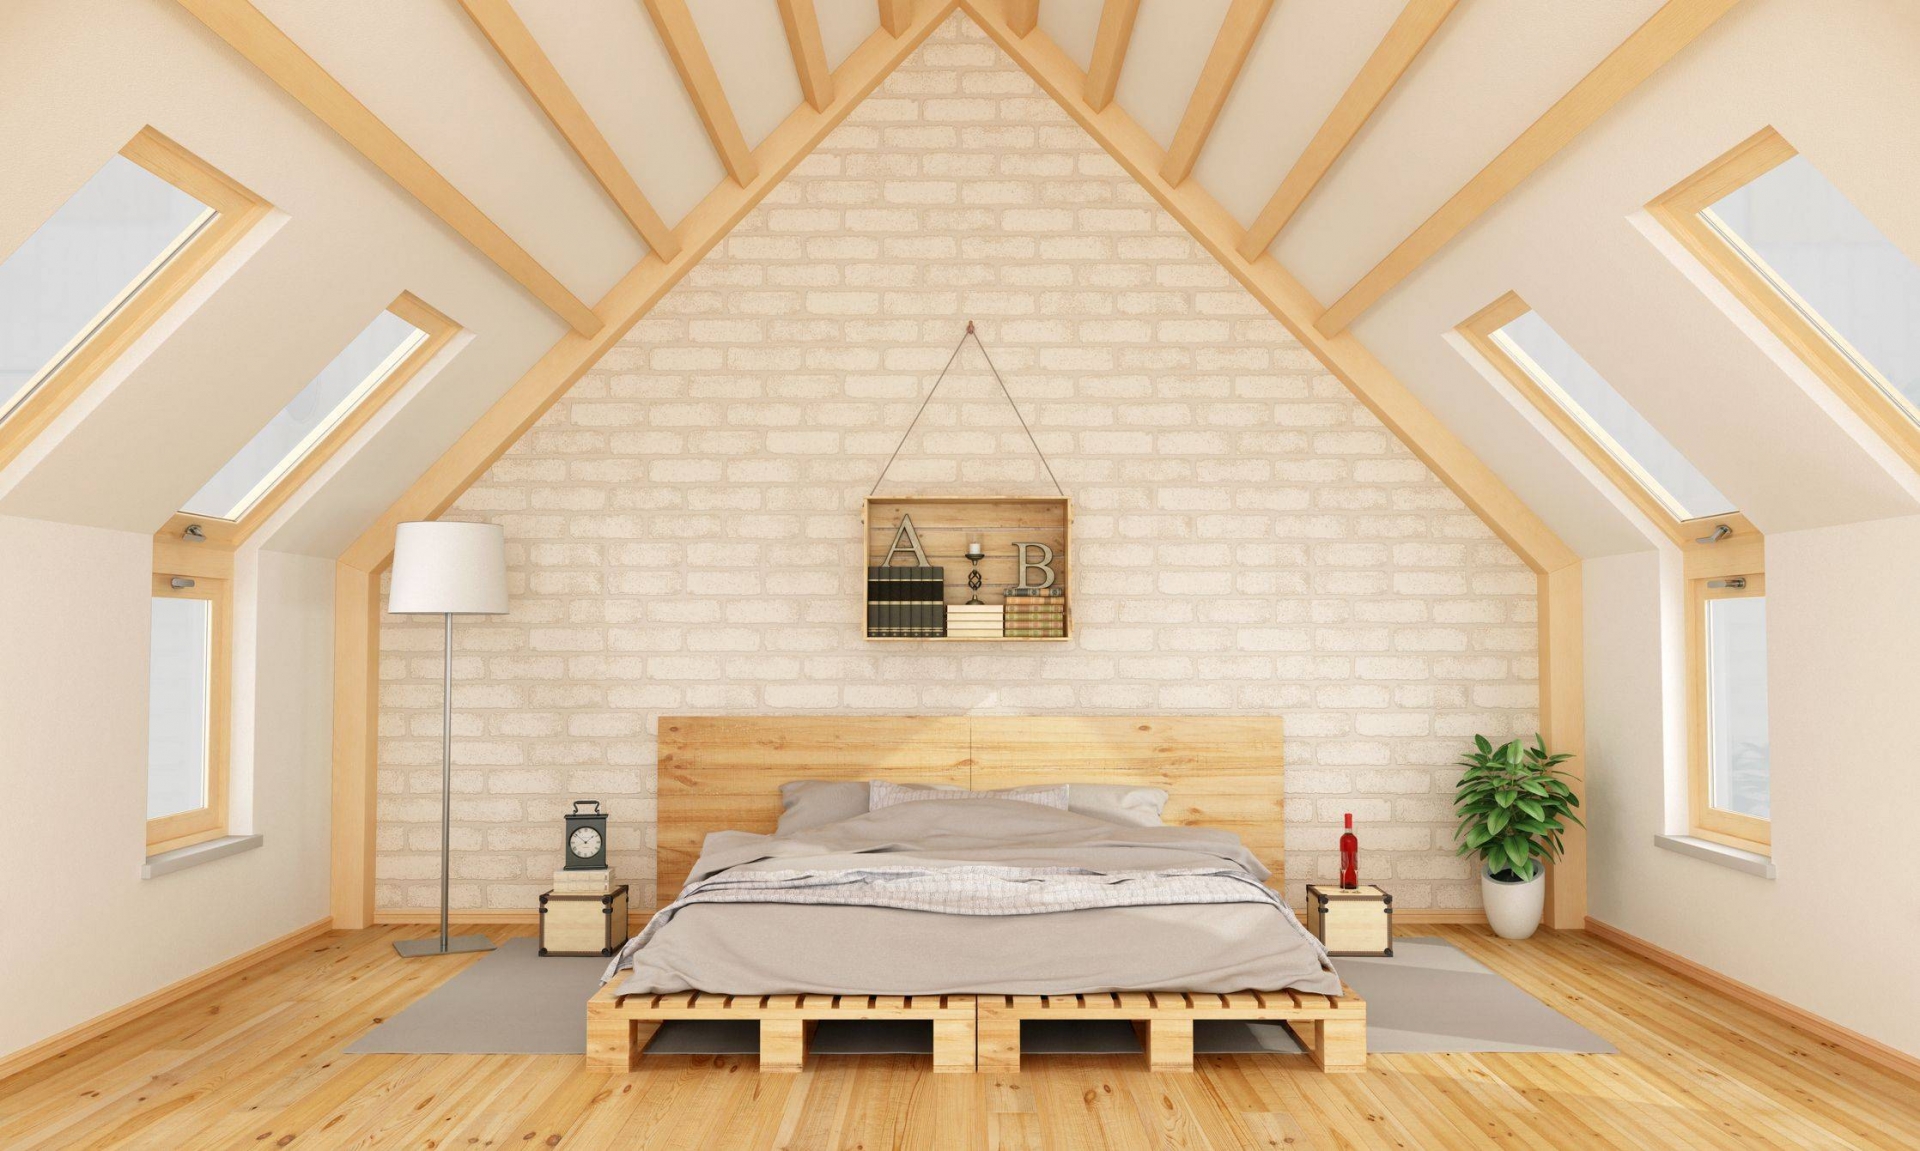 Phòng ngủ được thiết kế trên tầng áp mái với phong cách nhẹ nhàng của nội thất gỗ như sàn nhà, giường pallet gam màu tươi sáng,... Bức tường đầu giường ốp gạch mộc mạc cùng ánh sáng từ những ô cửa sổ trần cho không gian thoáng đãng.